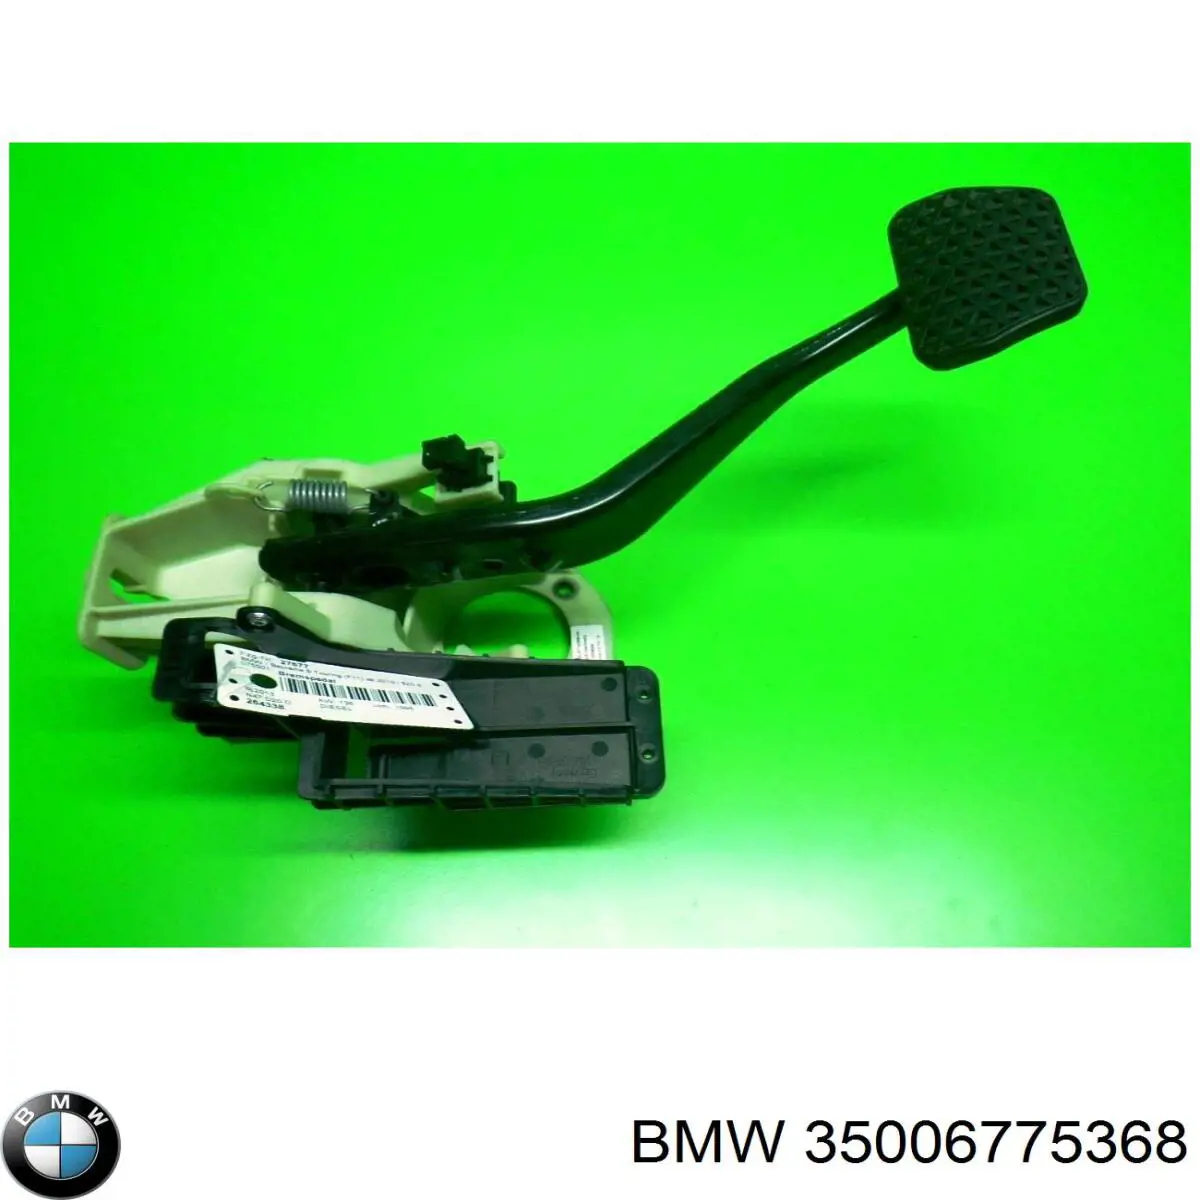 35006775368 BMW pedal do freio